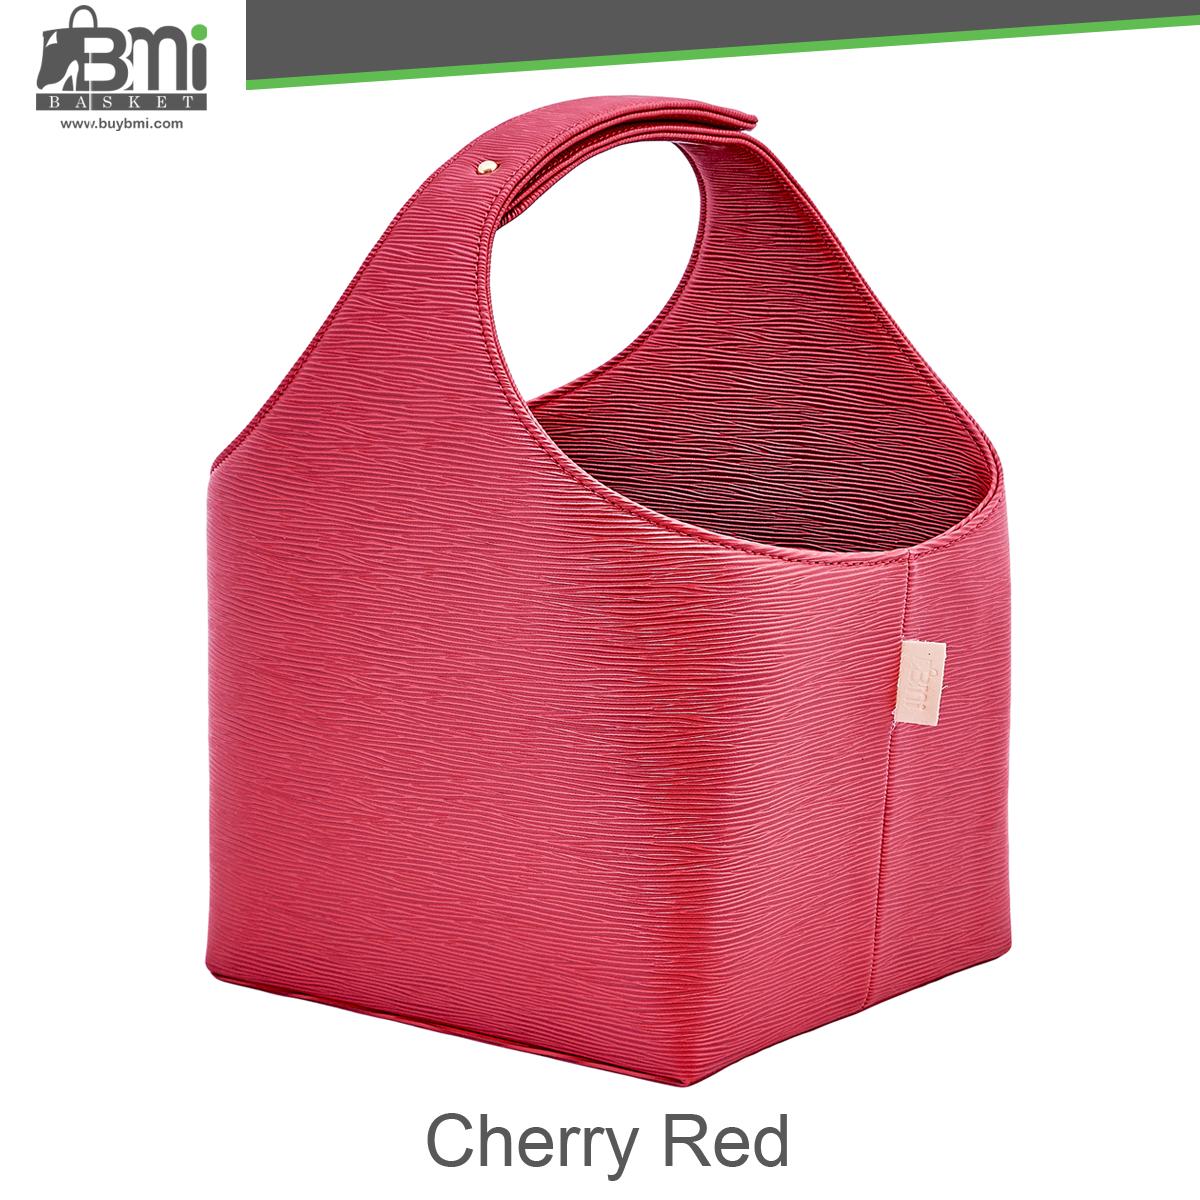 BMI Basket(Cherry Red)  basket ตะกร้าอเนกประสงค์